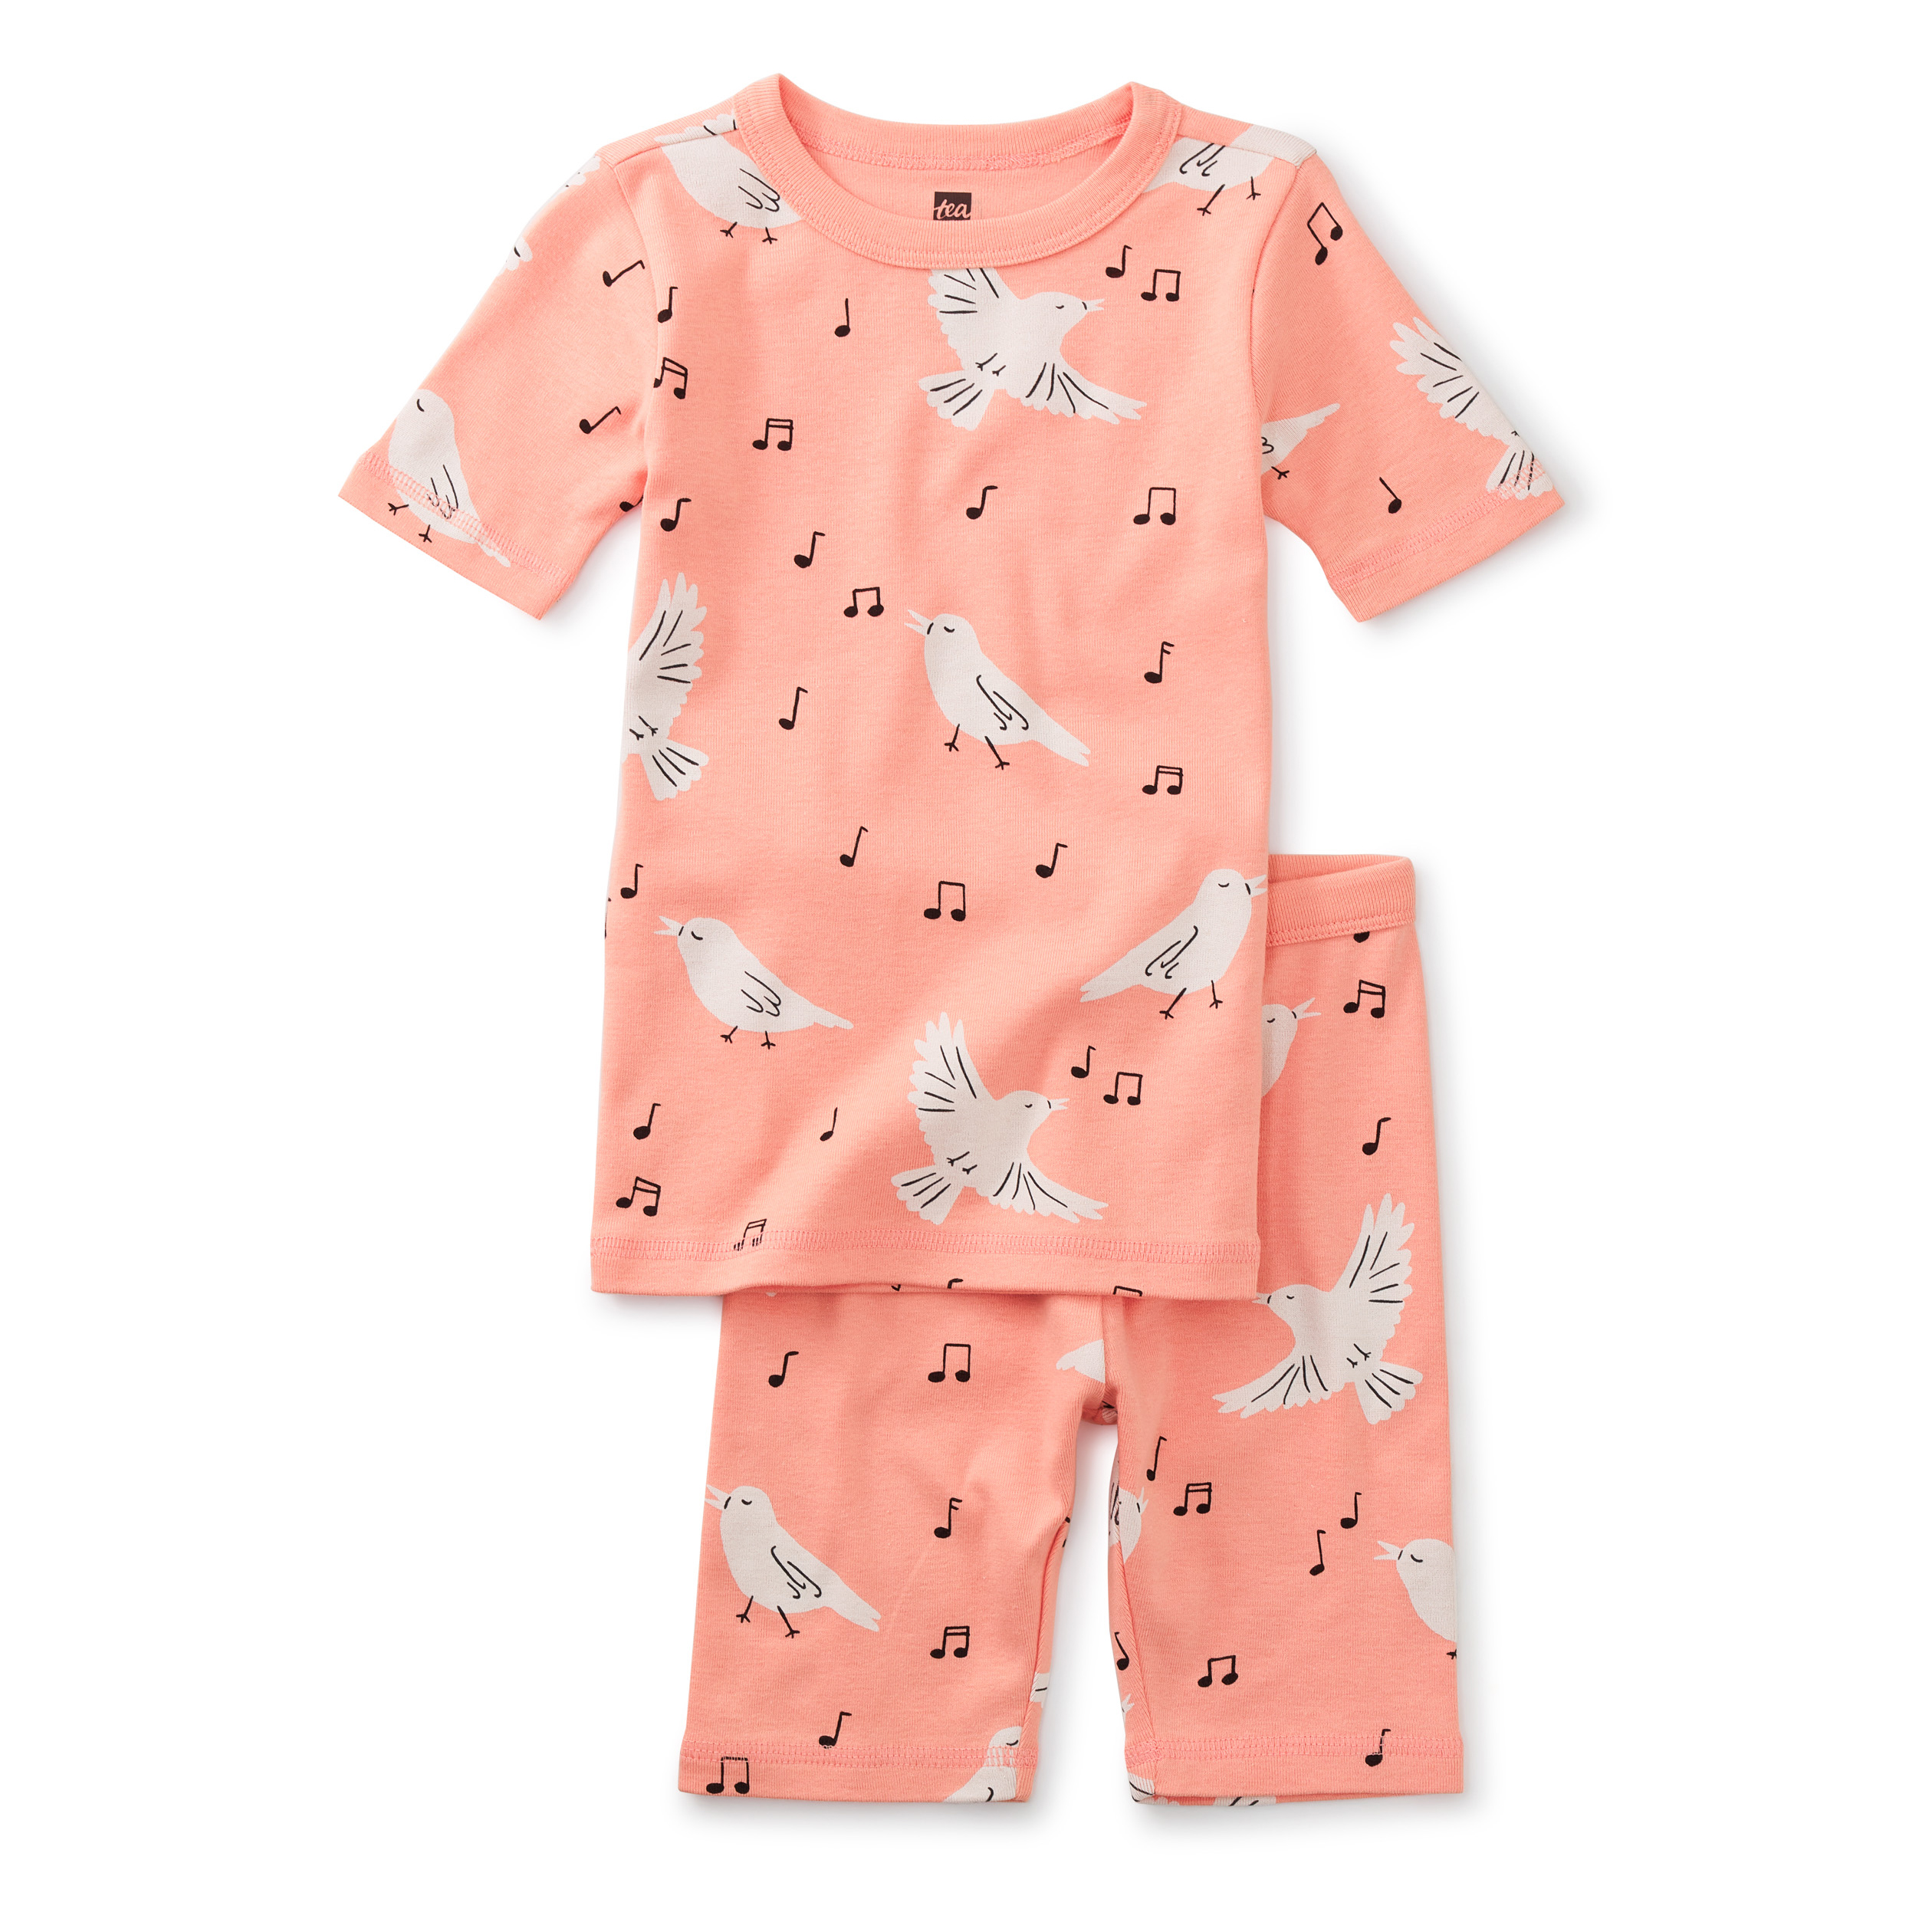 In your dreams Songbird shortie pajamas 1